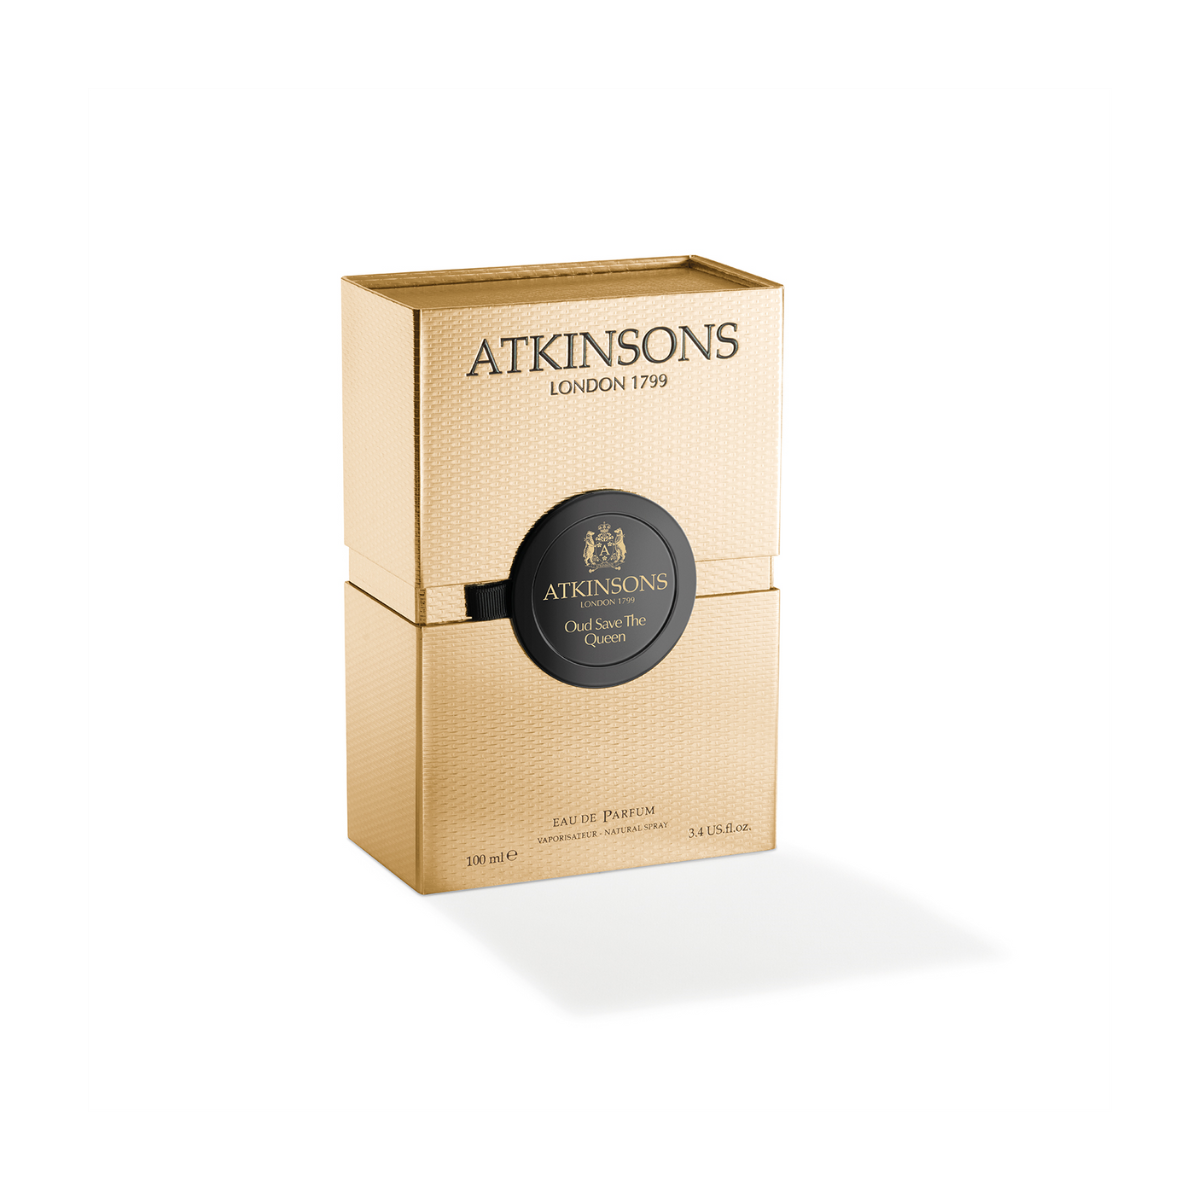 Atkinsons Oud Save The Quen Eau de Parfum